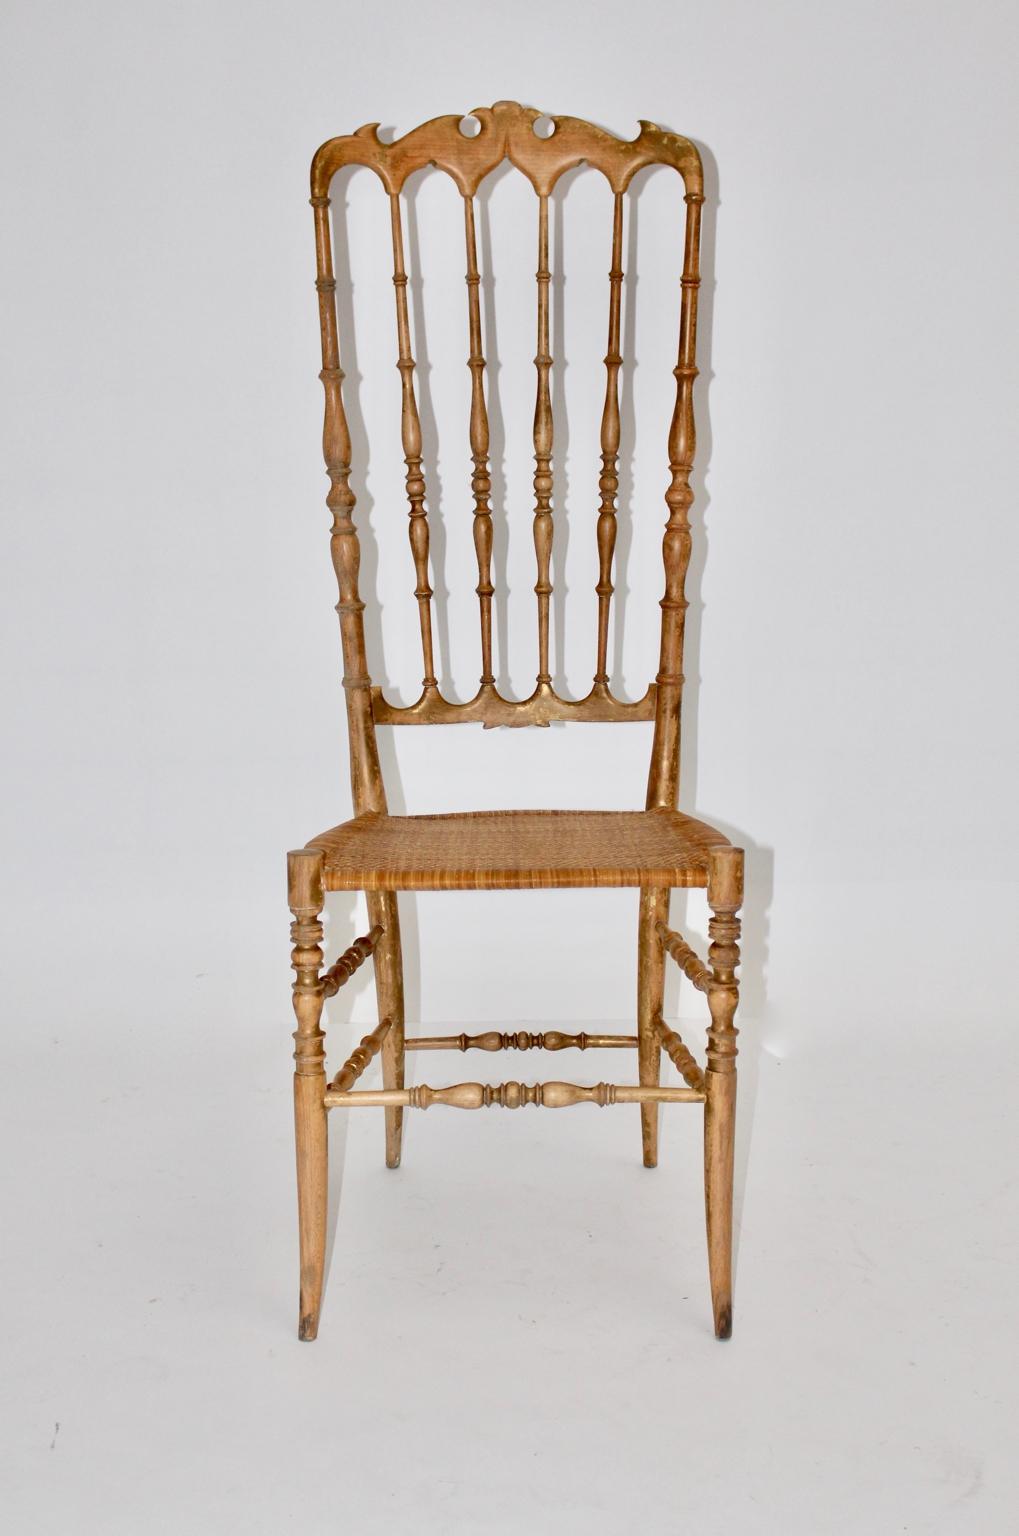 Mid Century Modern extra hochlehniger Vintage Beistellstuhl Chiavari aus Buchenholz mit teilweise vergoldeten Lehnen an der Oberfläche. Der schöne Stuhl hat eine handgefertigte Sitzfläche.

Sehr guter Vintage-Zustand mit geringen Altersspuren. 
ca.